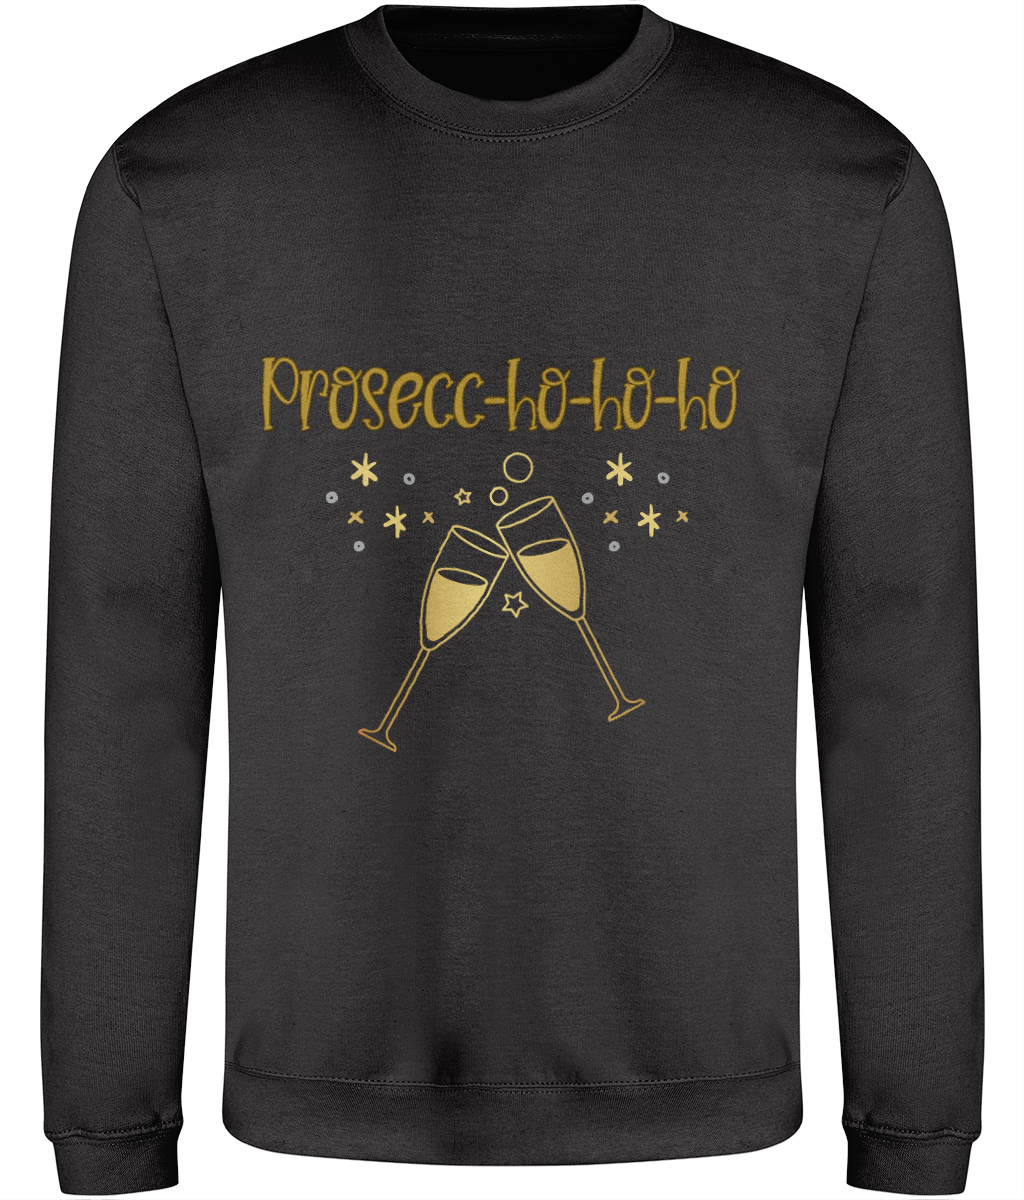 Prosecc-ho-ho-ho - Welsh Christmas Sweatshirt